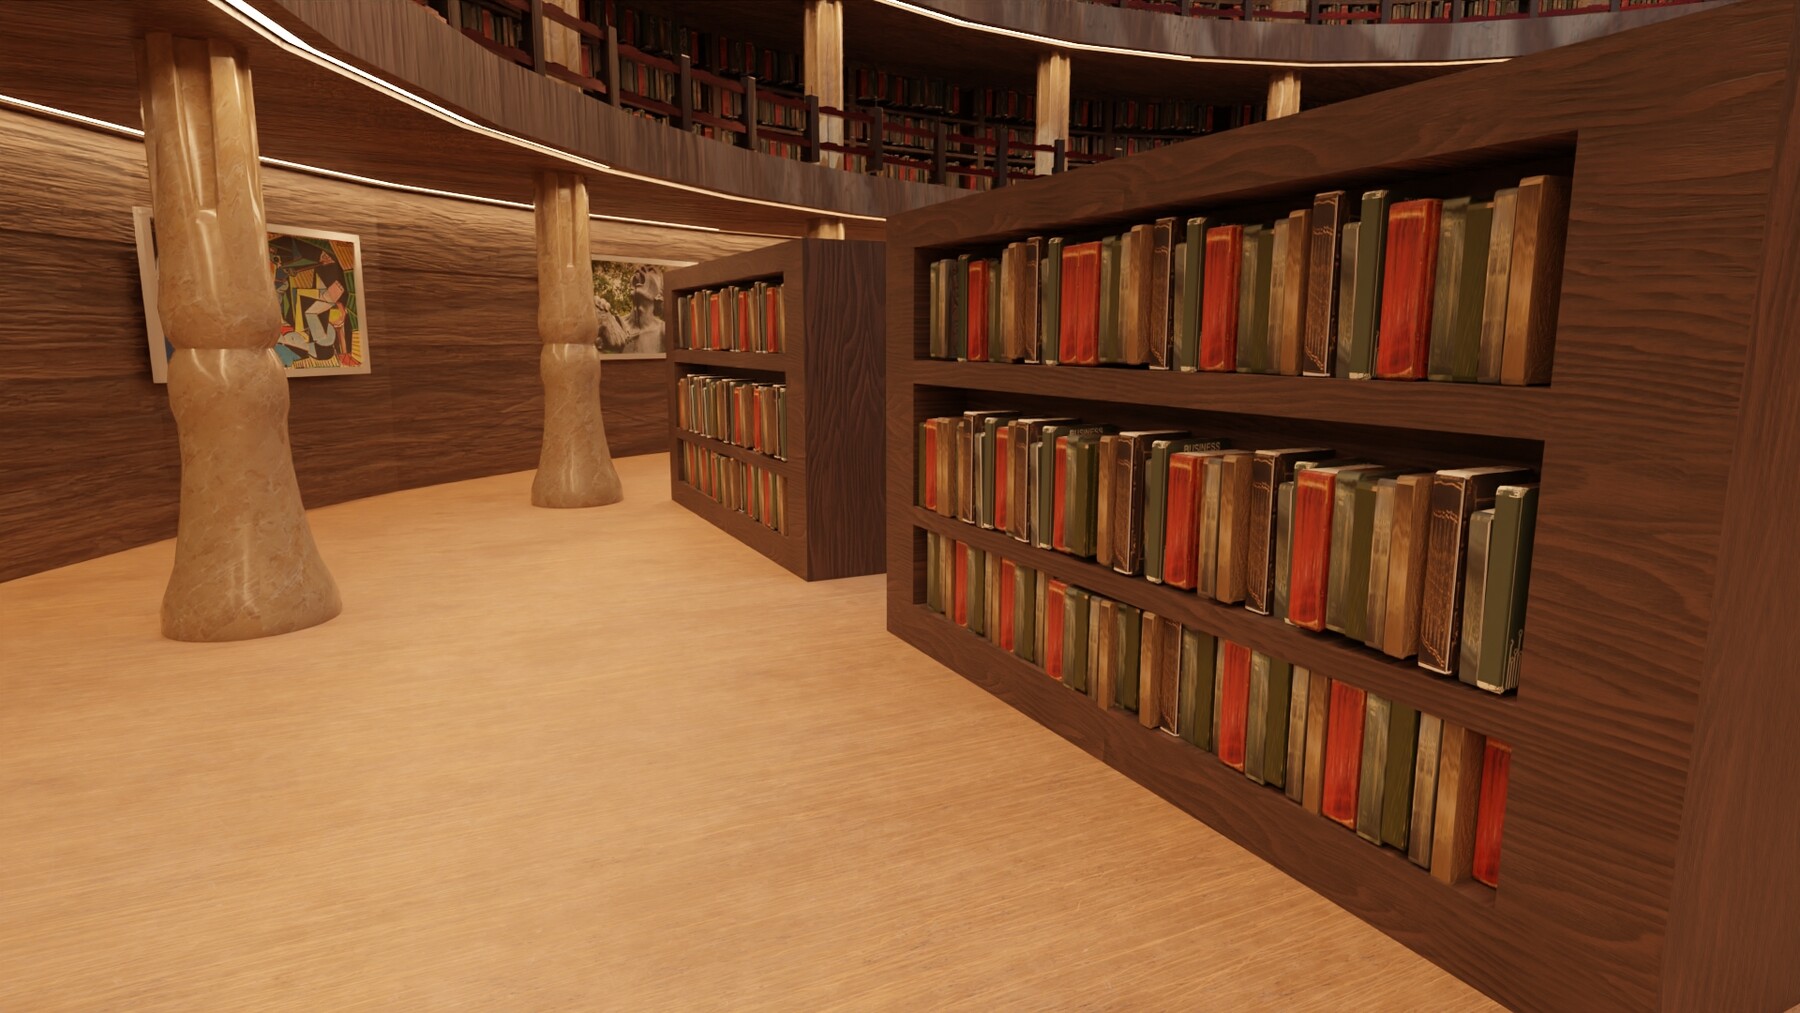 Библиотека 3 0. Библиотека 3д. Макет библиотеки. Библиотека 3д моделей. Библиотека 3d моделей.